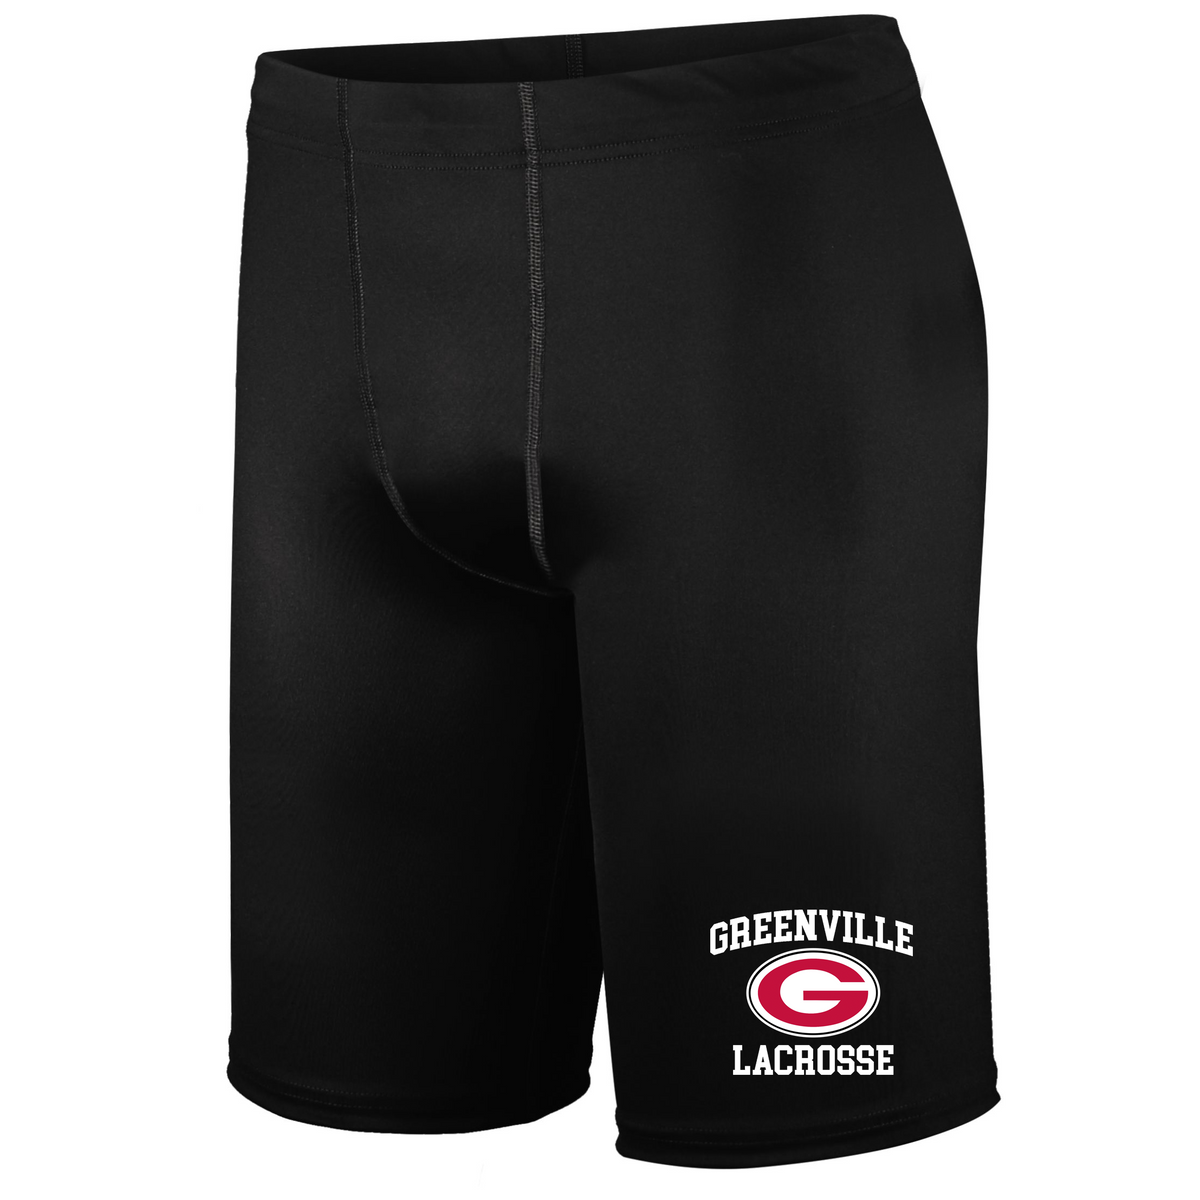 Greenville Lacrosse PR Max Compression Shorts